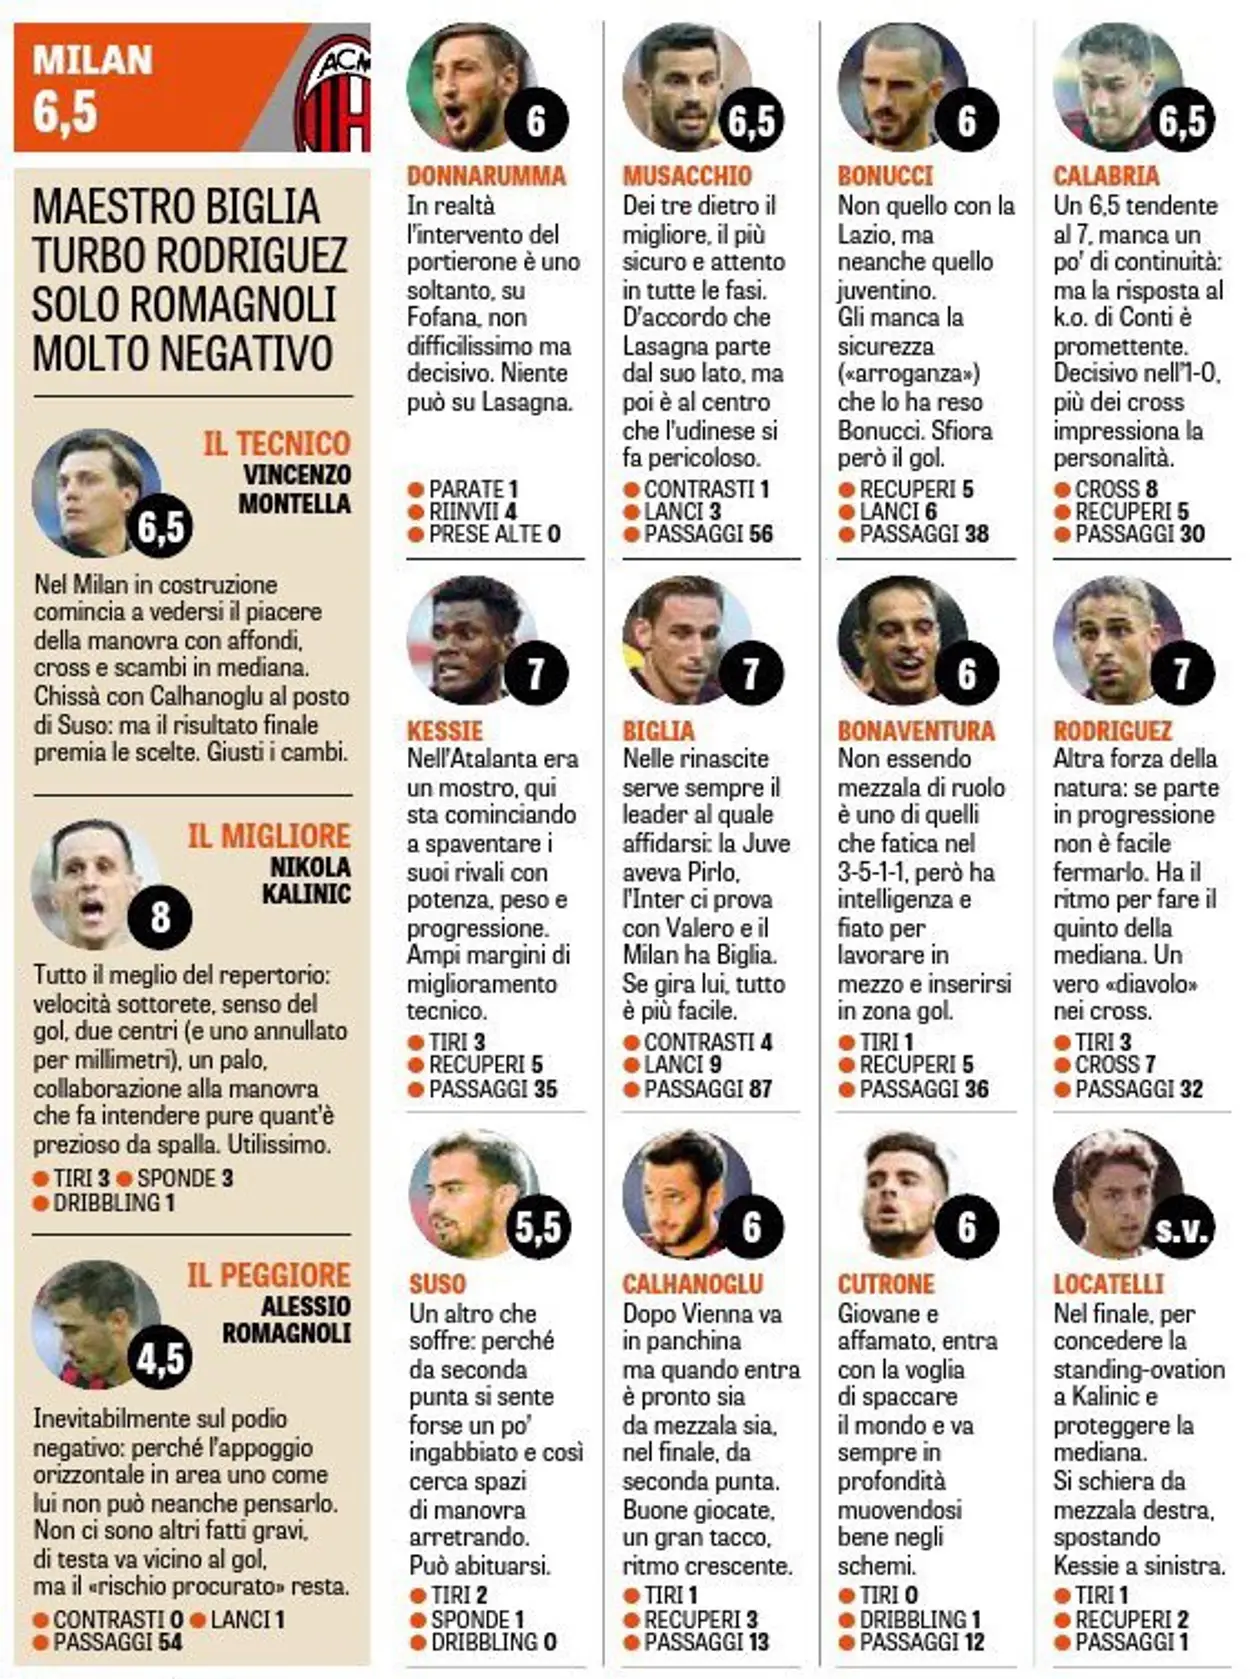 Оценки от La Gazzetta dello Sport за матч против «Удинезе»